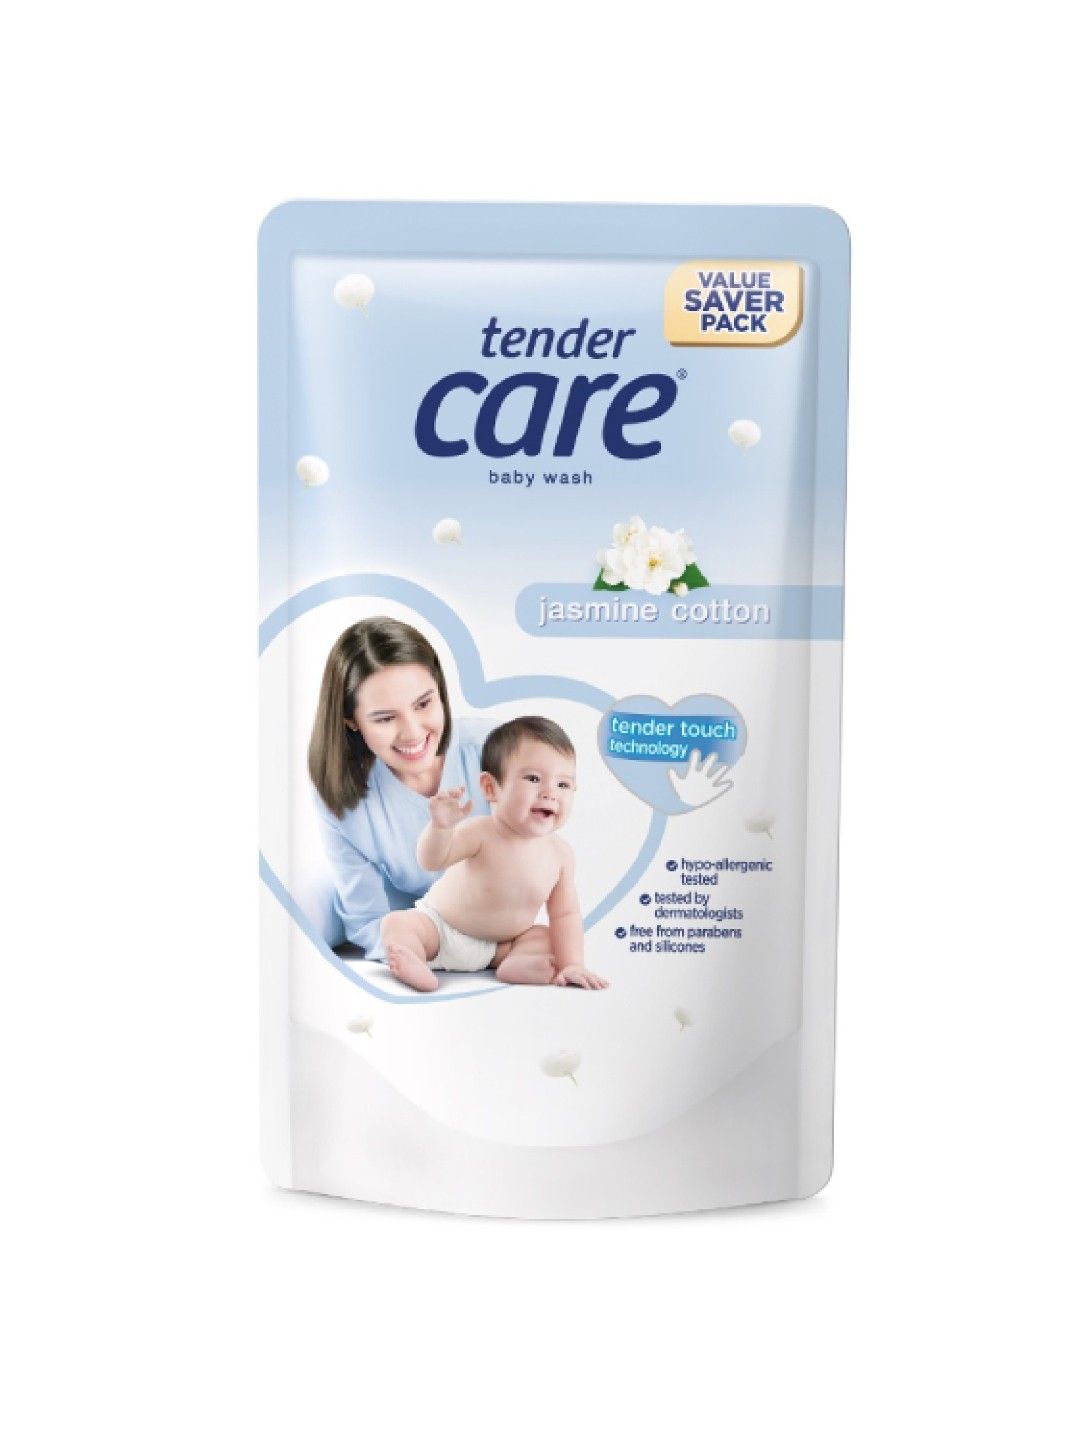 TENDER CARE, Jasmine Cotton Hypo-Allergenic Baby Powder 100g